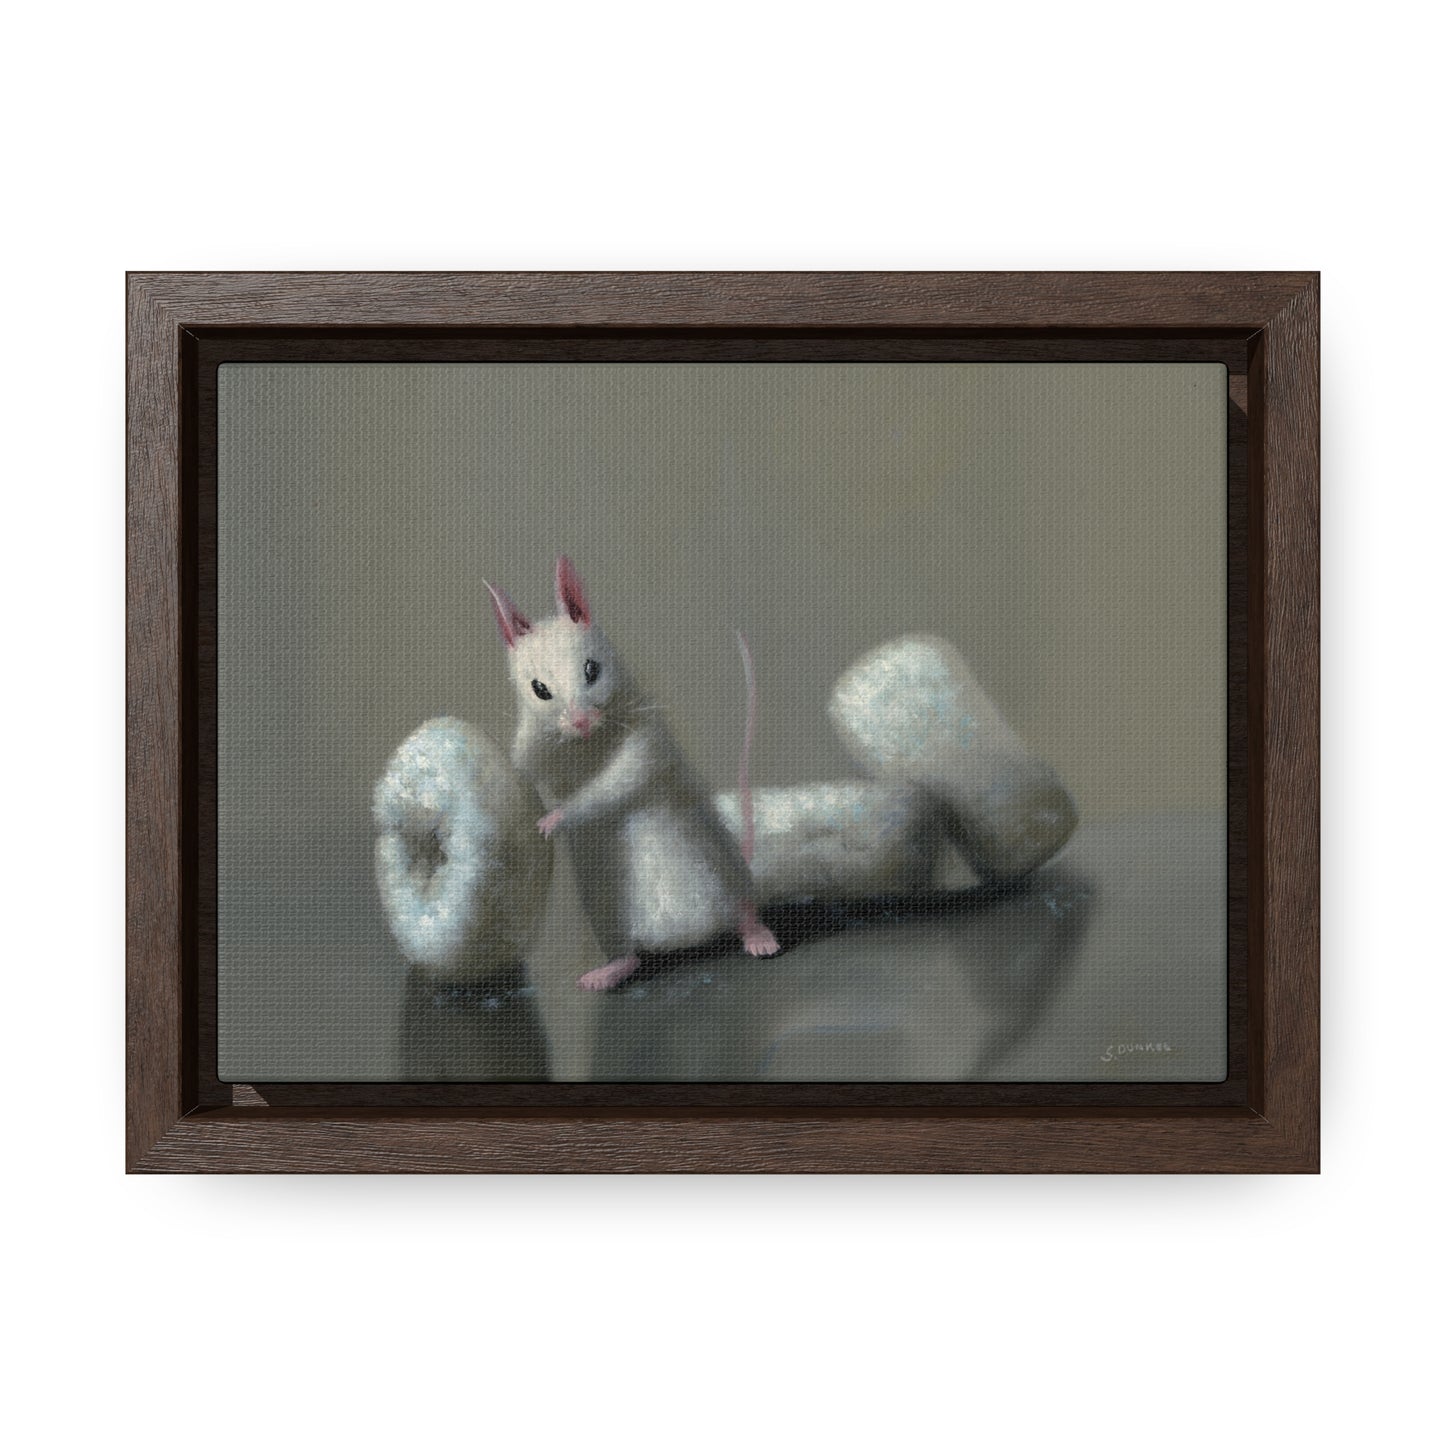 Stuart Dunkel: "Donettes in White" - Framed Canvas Reproduction